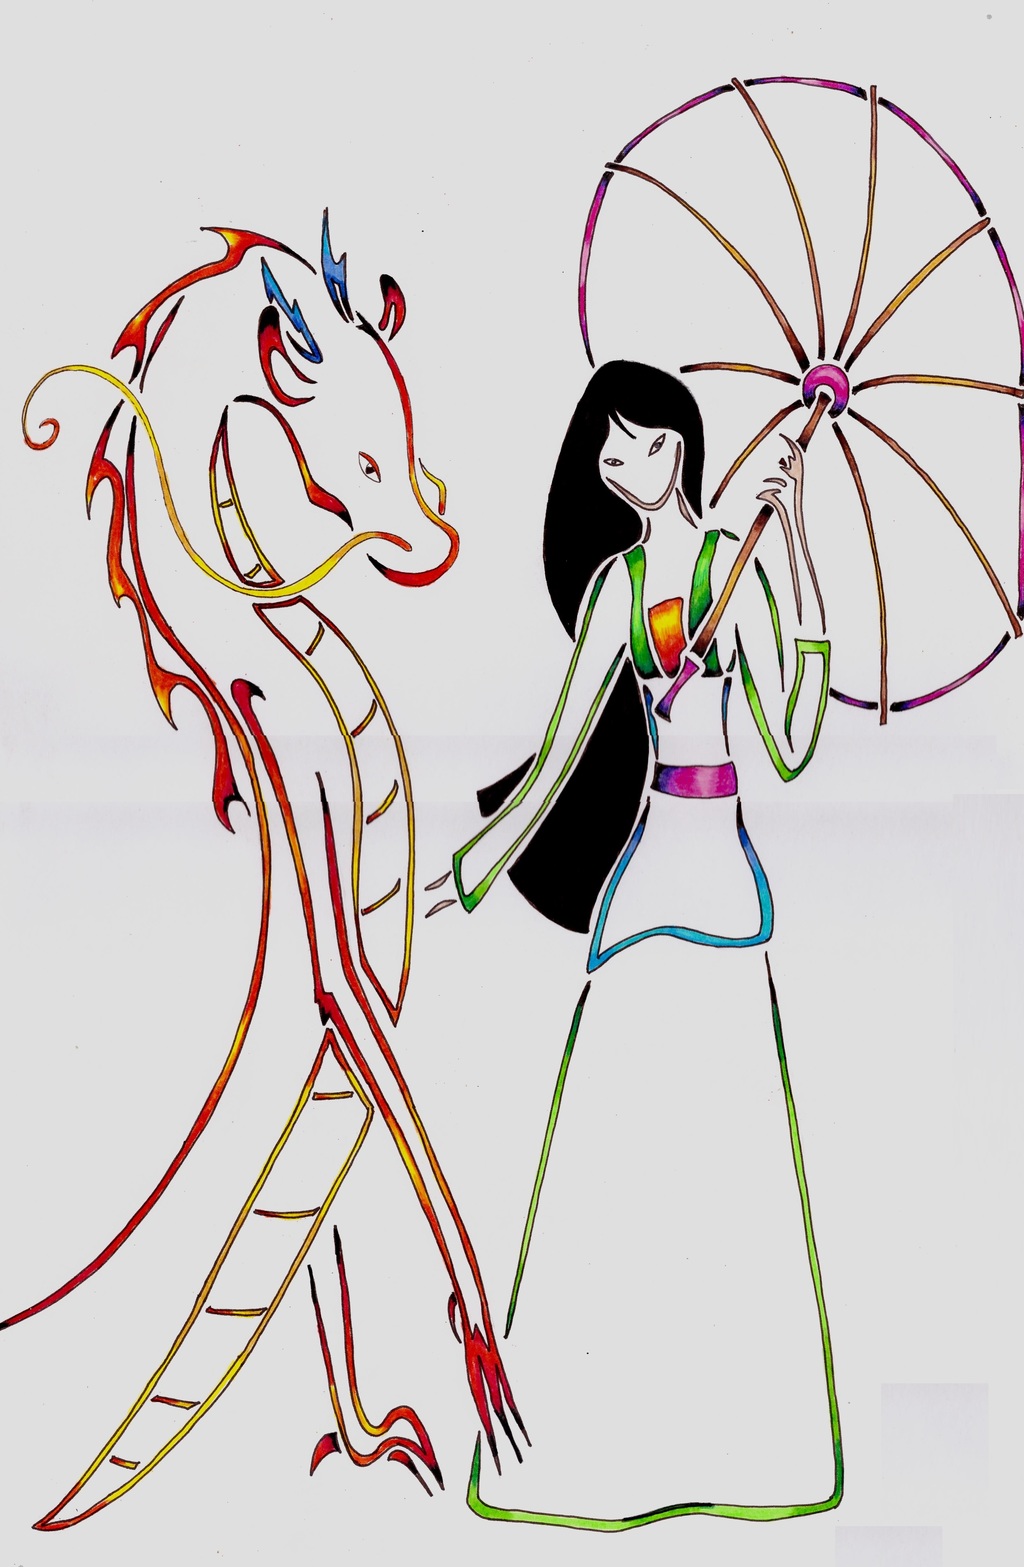 Most recent image: Mulan and Mushu